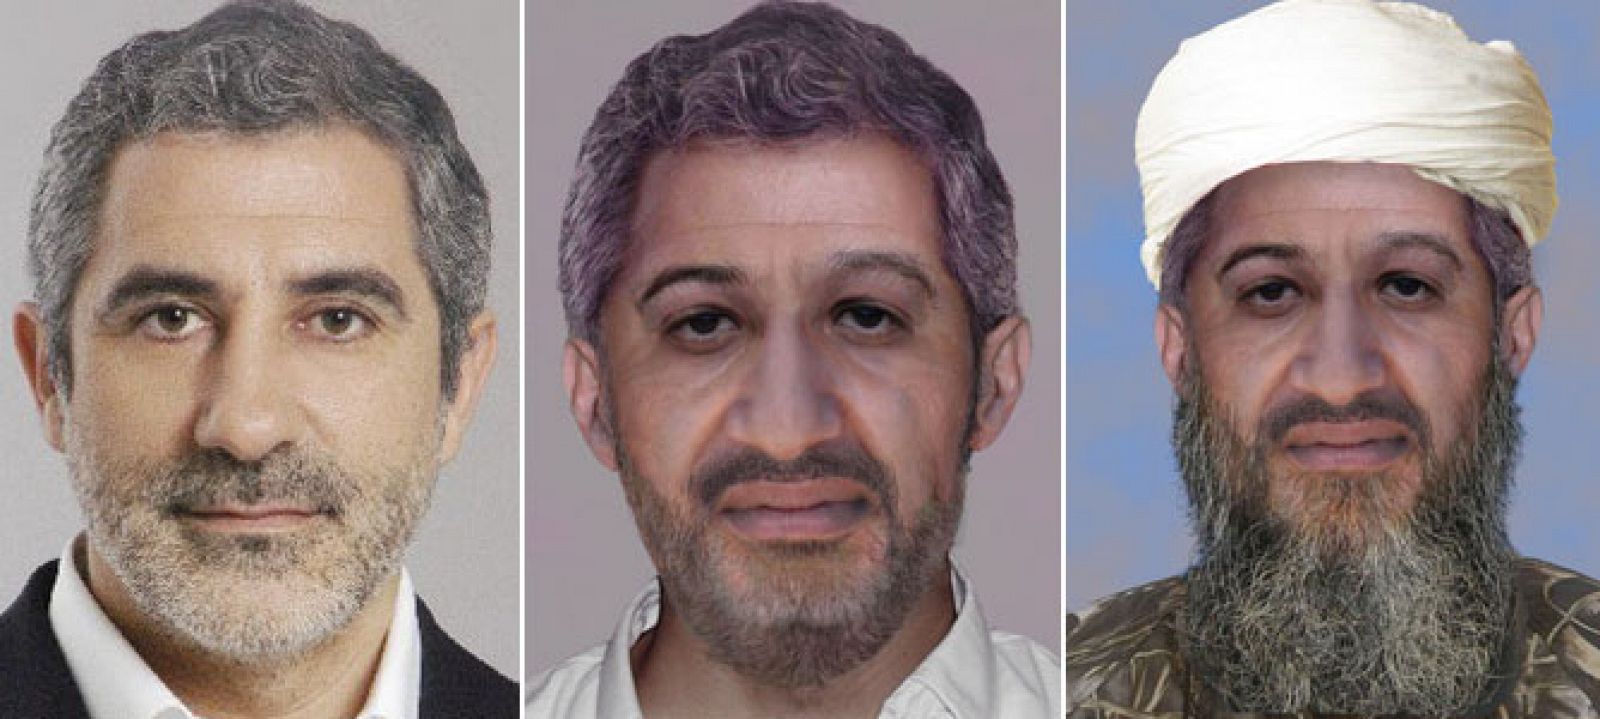 El FBI utilizó rasgos de Gaspar Llamazares para realizar un retrato robot del líder de Al Qaeda, Osama Bin Laden, envejecido.